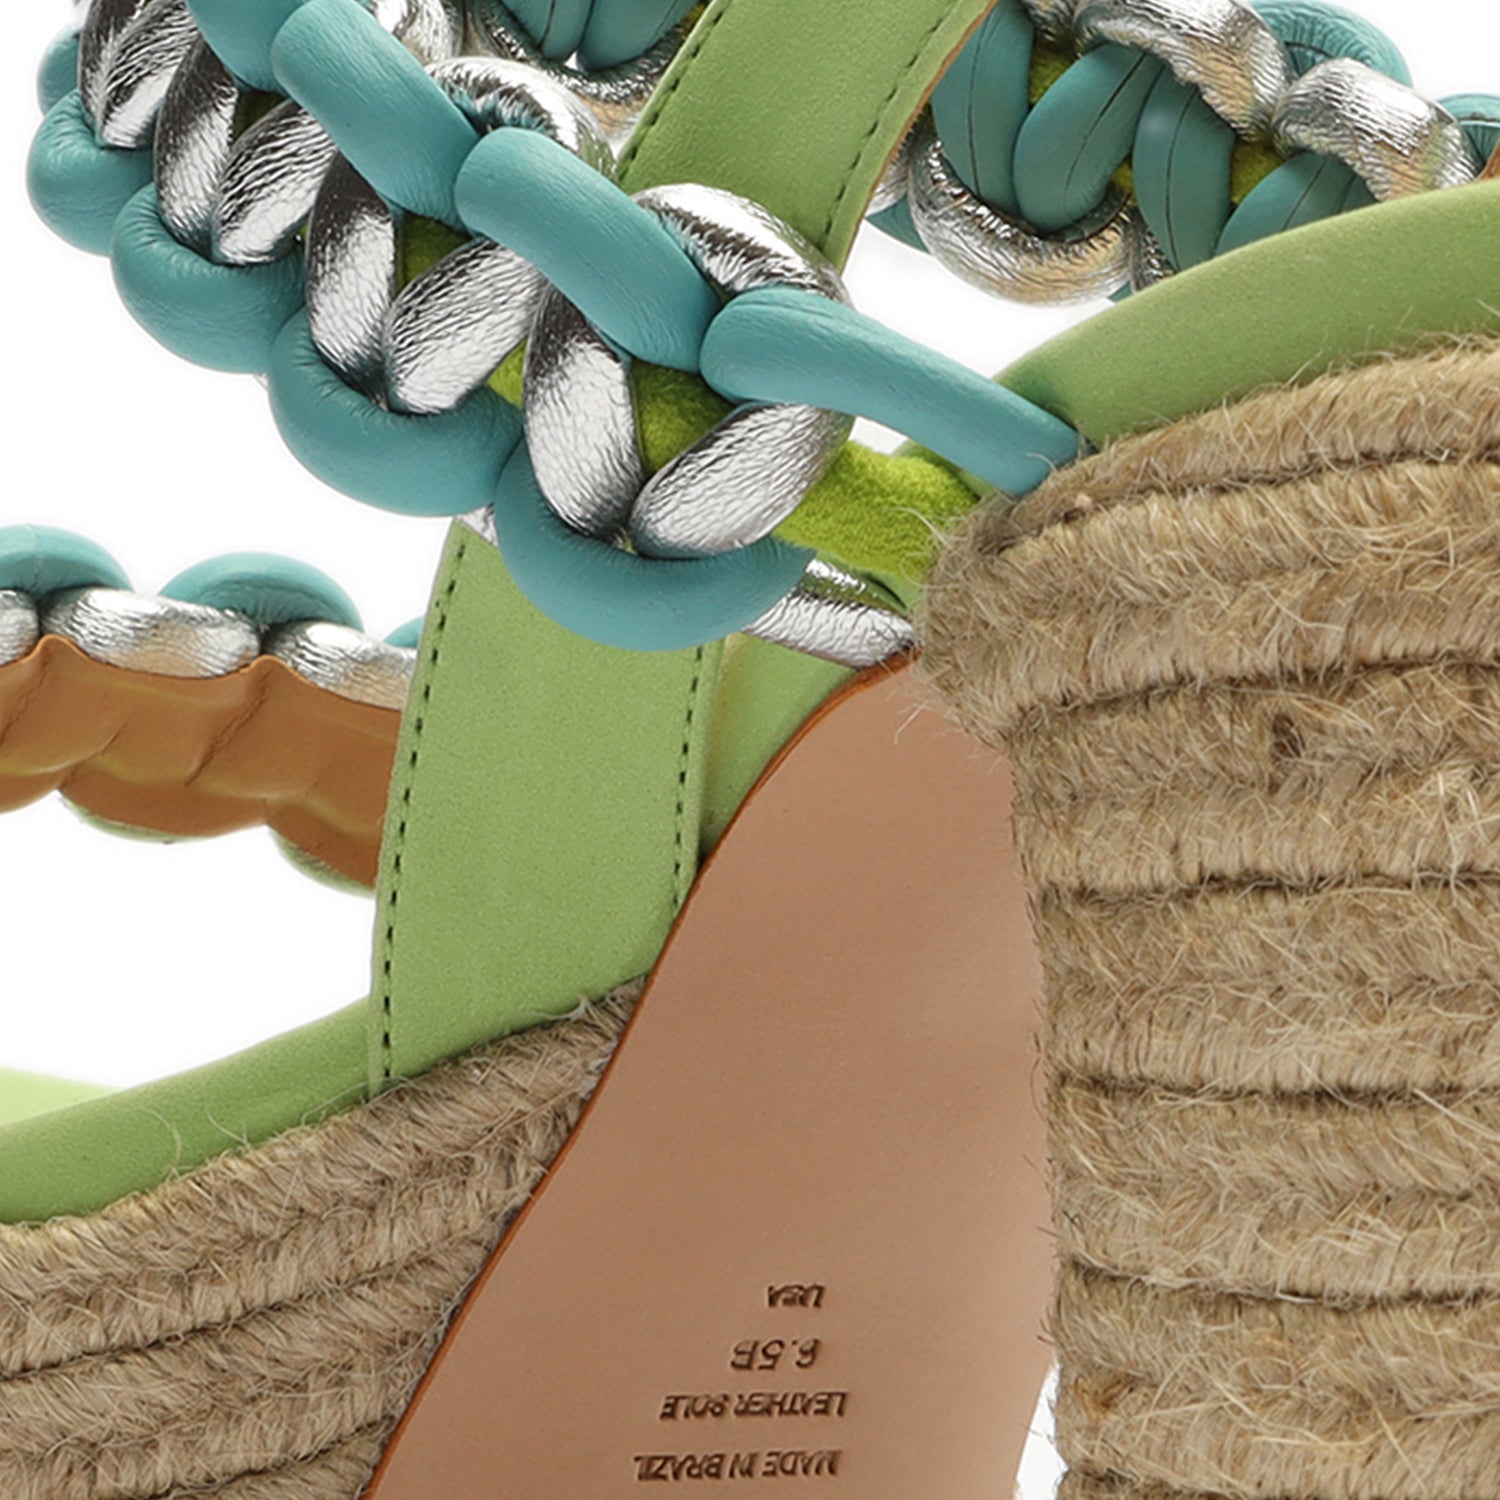 Juliet Plataform Suede & Leather Sandal Sandals Sale    - Schutz Shoes